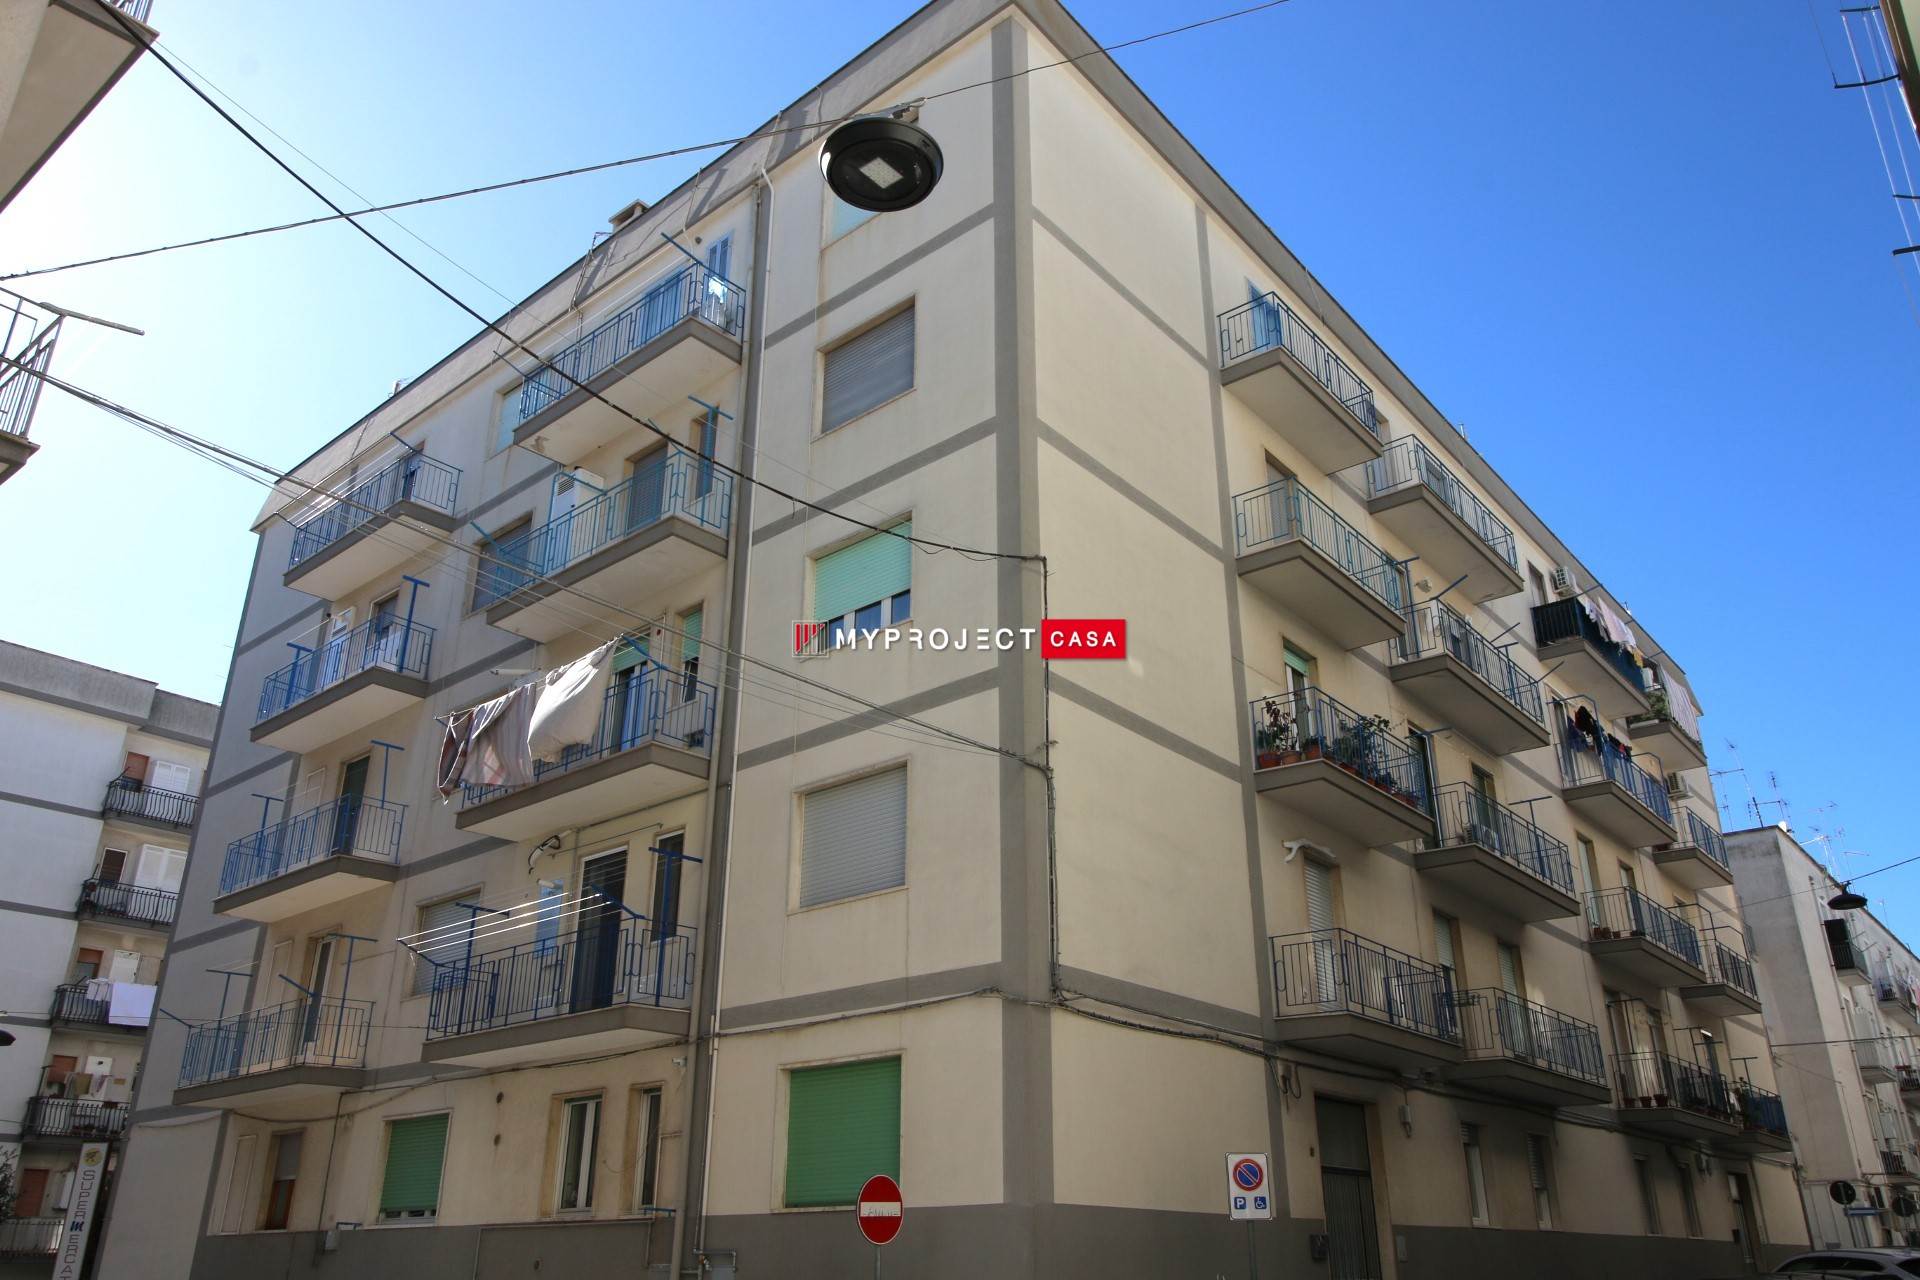 Appartamento in vendita a Martina Franca, 3 locali, zona Località: CENTRALE, prezzo € 119.000 | PortaleAgenzieImmobiliari.it